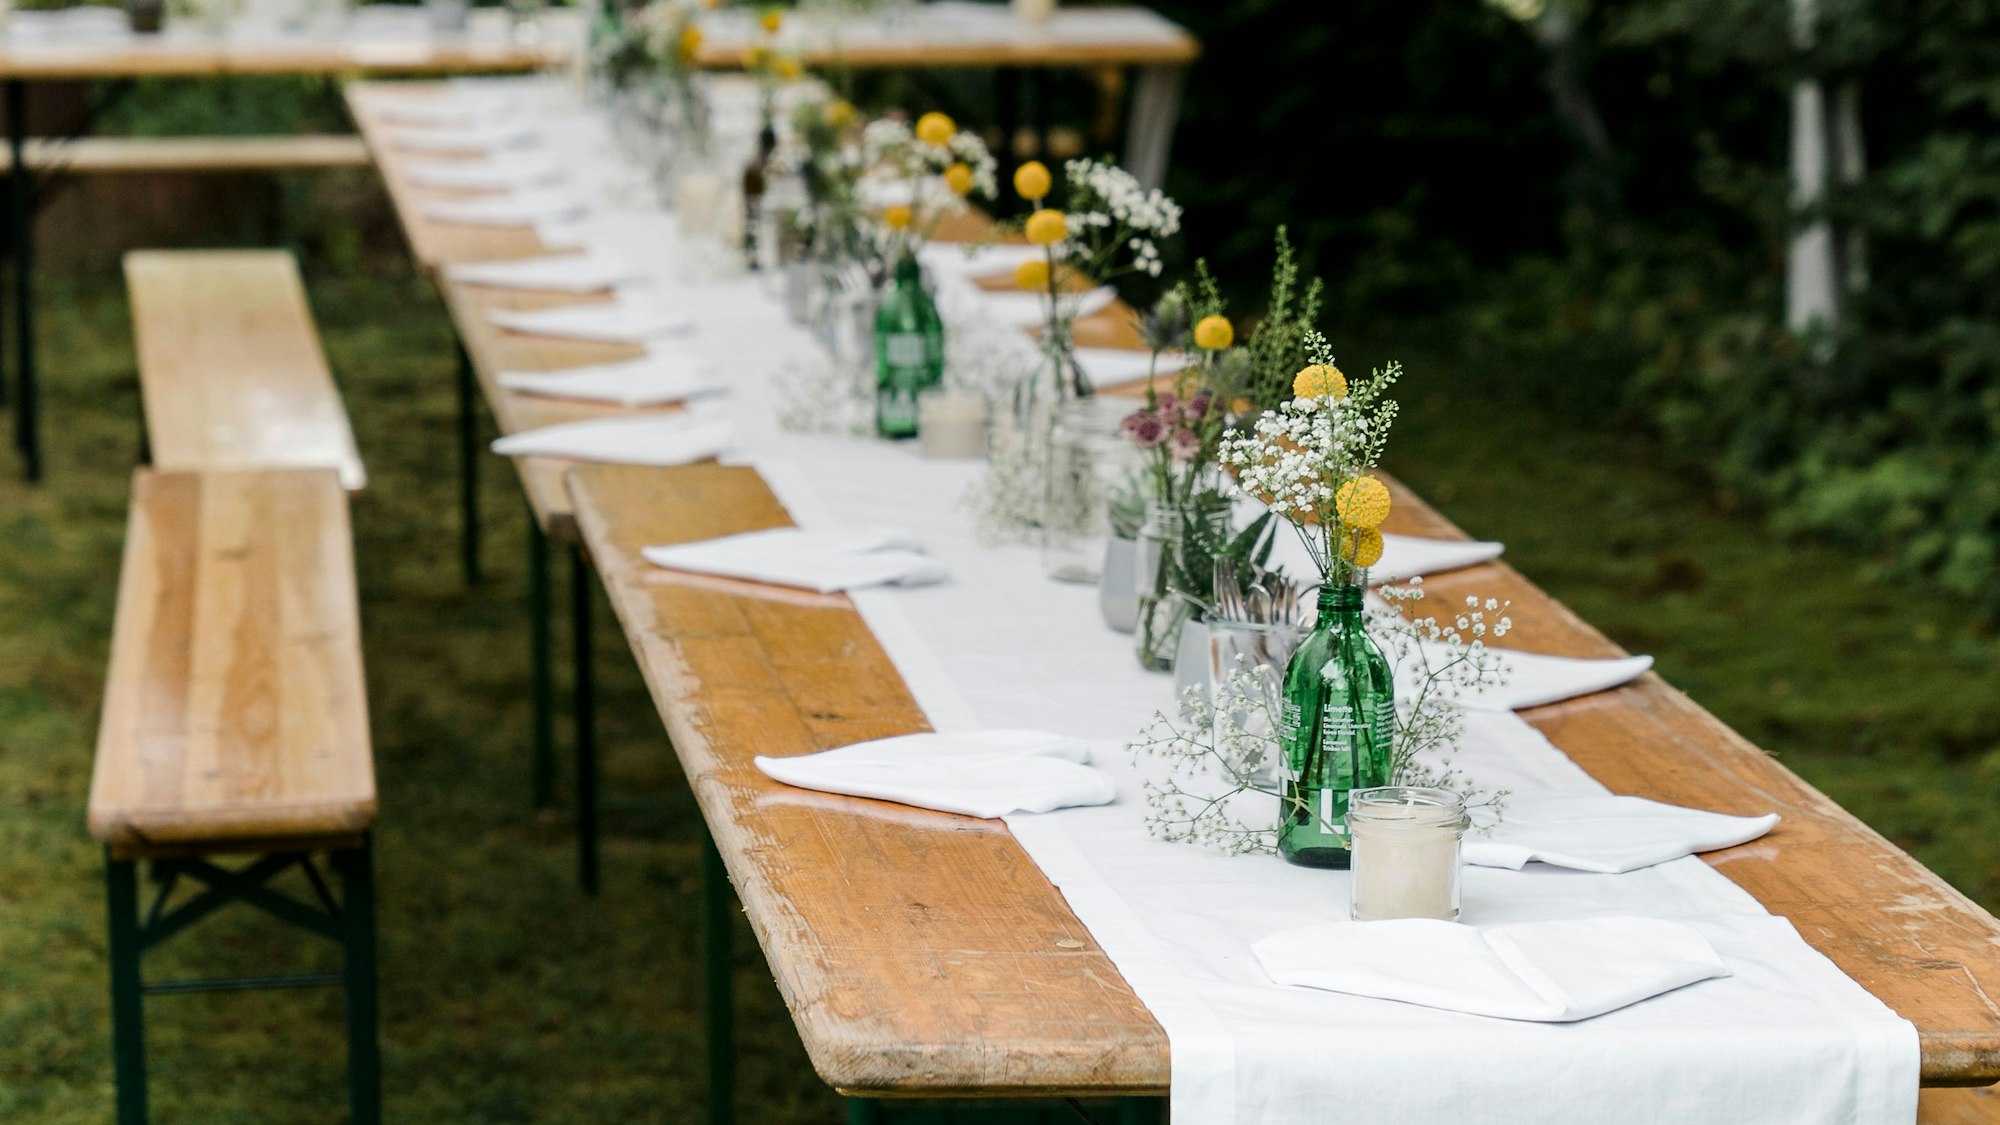 Zu sehen ist das Tischarrangement einer nachhaltigen Gartenhochzeit, mit Bierbänken und Zelten. Der Tisch ist geschmückt mit weißer, dezenter Stoffdeko und Wiesenblumen.